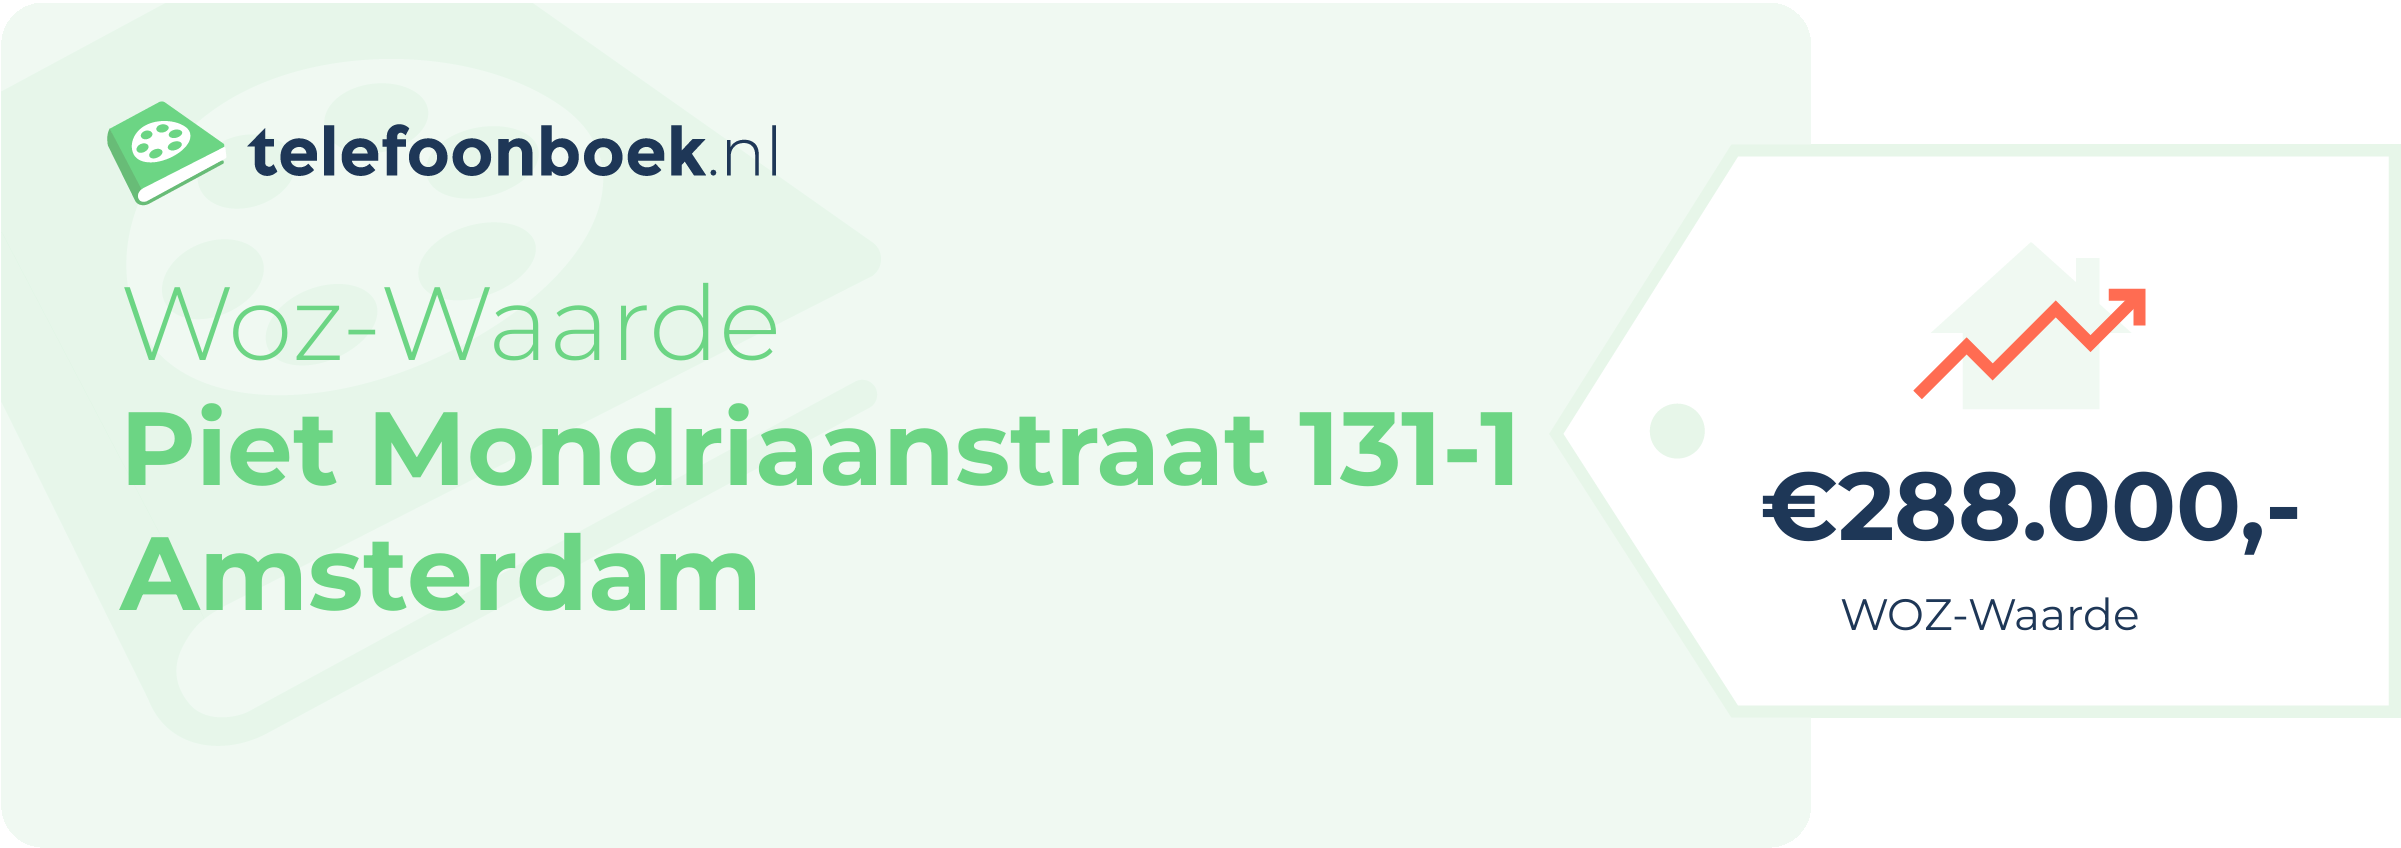 WOZ-waarde Piet Mondriaanstraat 131-1 Amsterdam